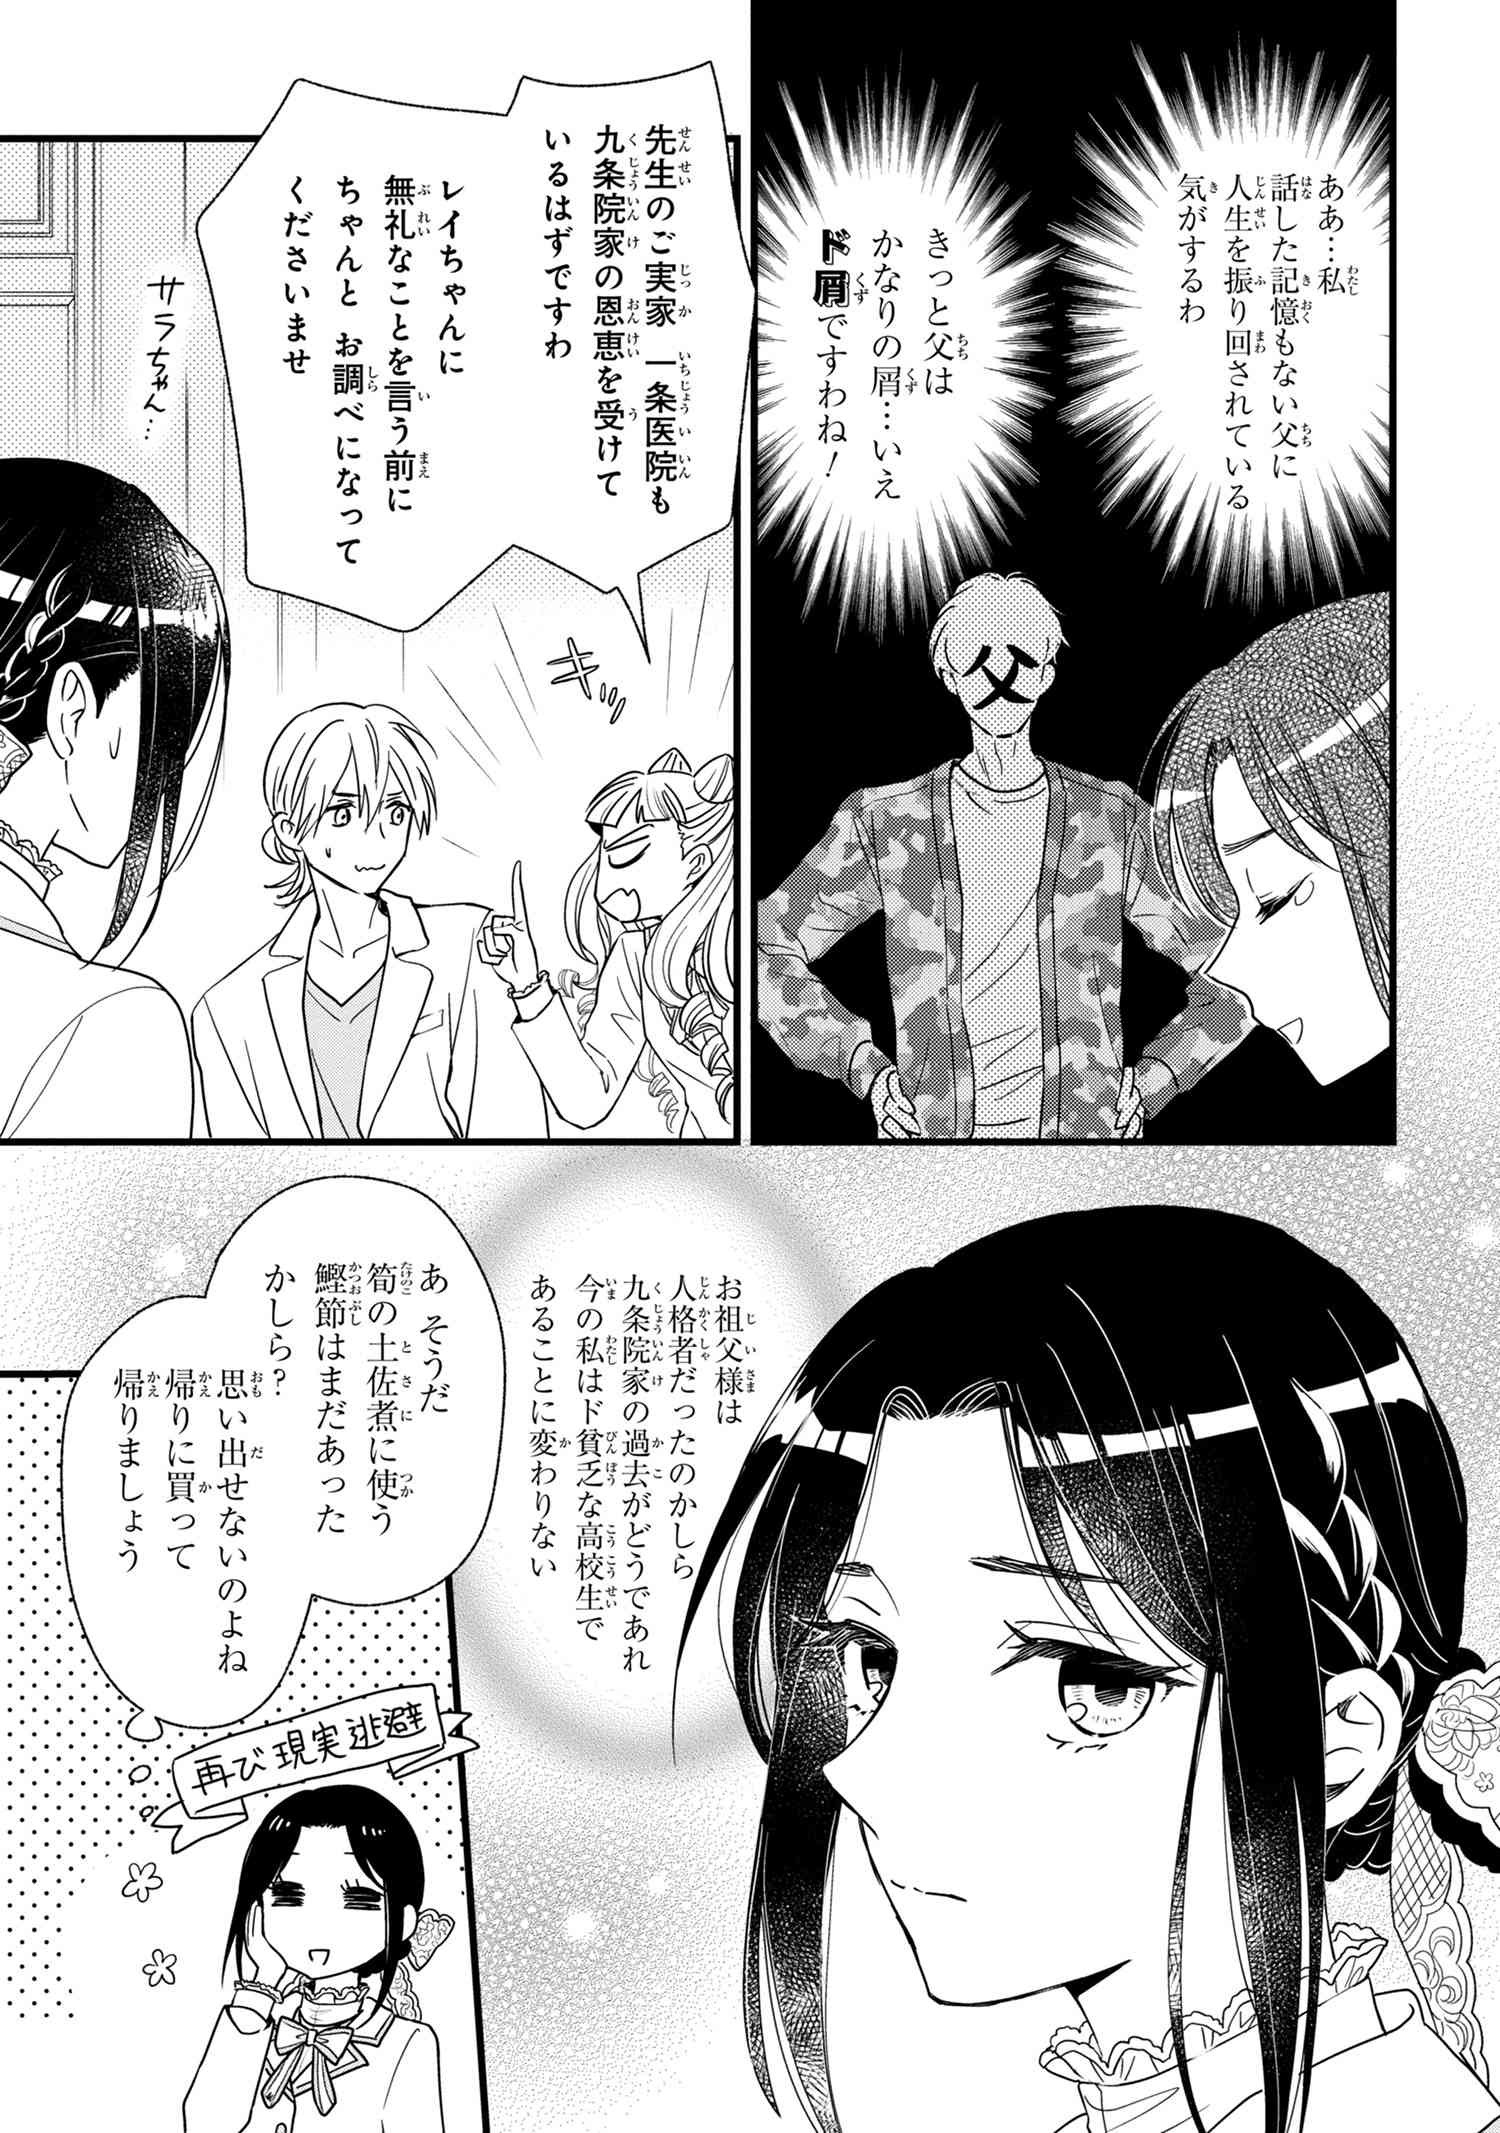 Reiko no Fuugi Akuyaku Reijou to Yobarete imasu ga, tada no Binbou Musume desu - Chapter 3-2 - Page 3